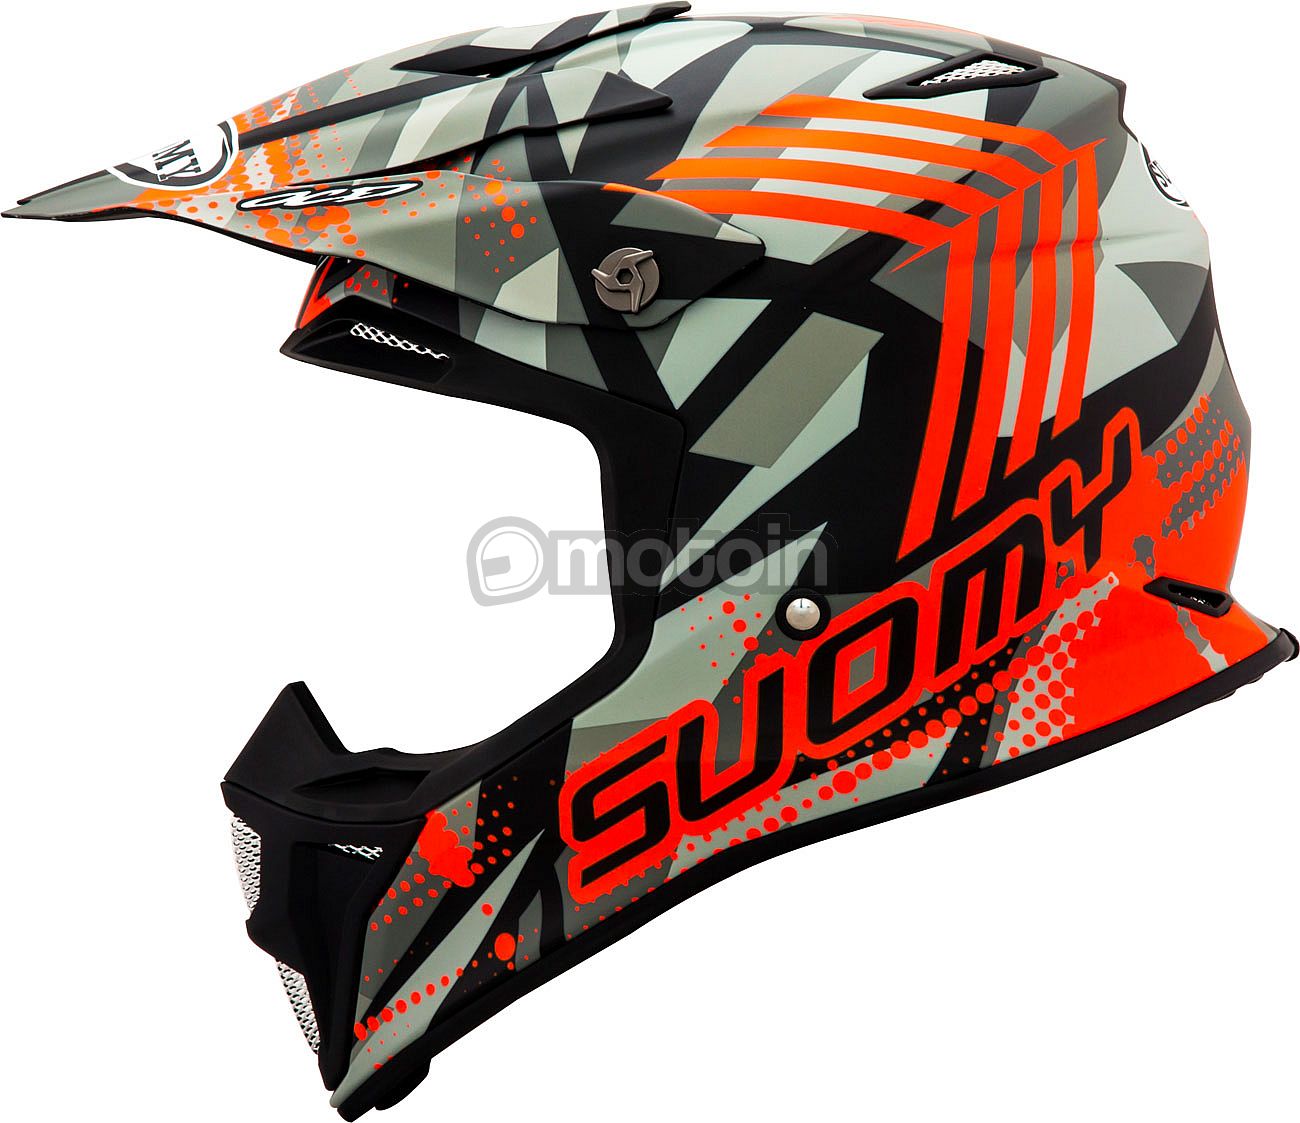 Suomy MX Speed Sergeant, Motocrosshelm